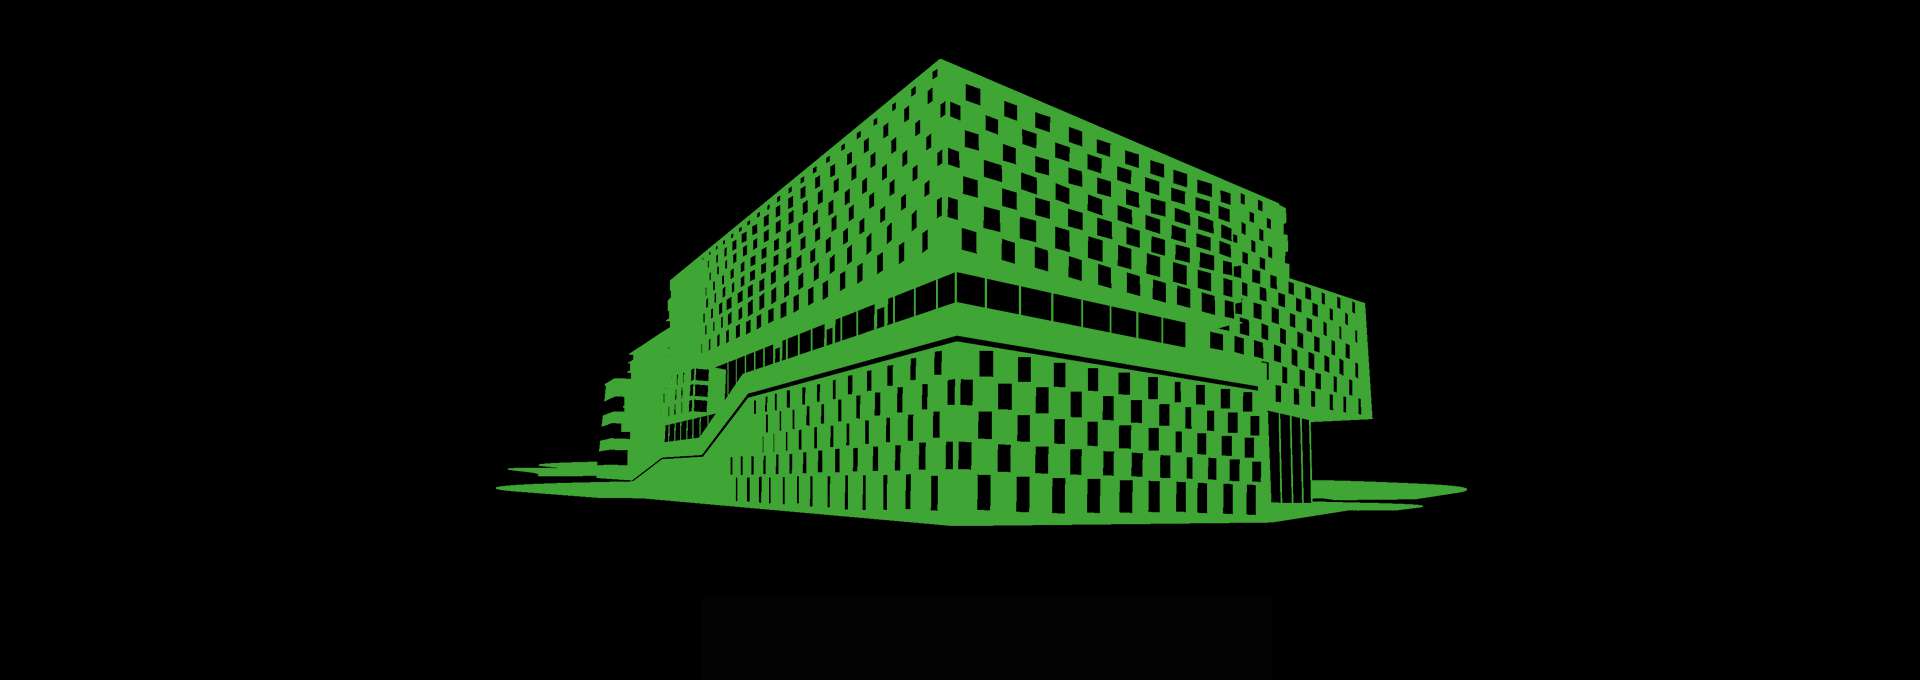 MDUs siluett i grönt, på en svart bakgrund